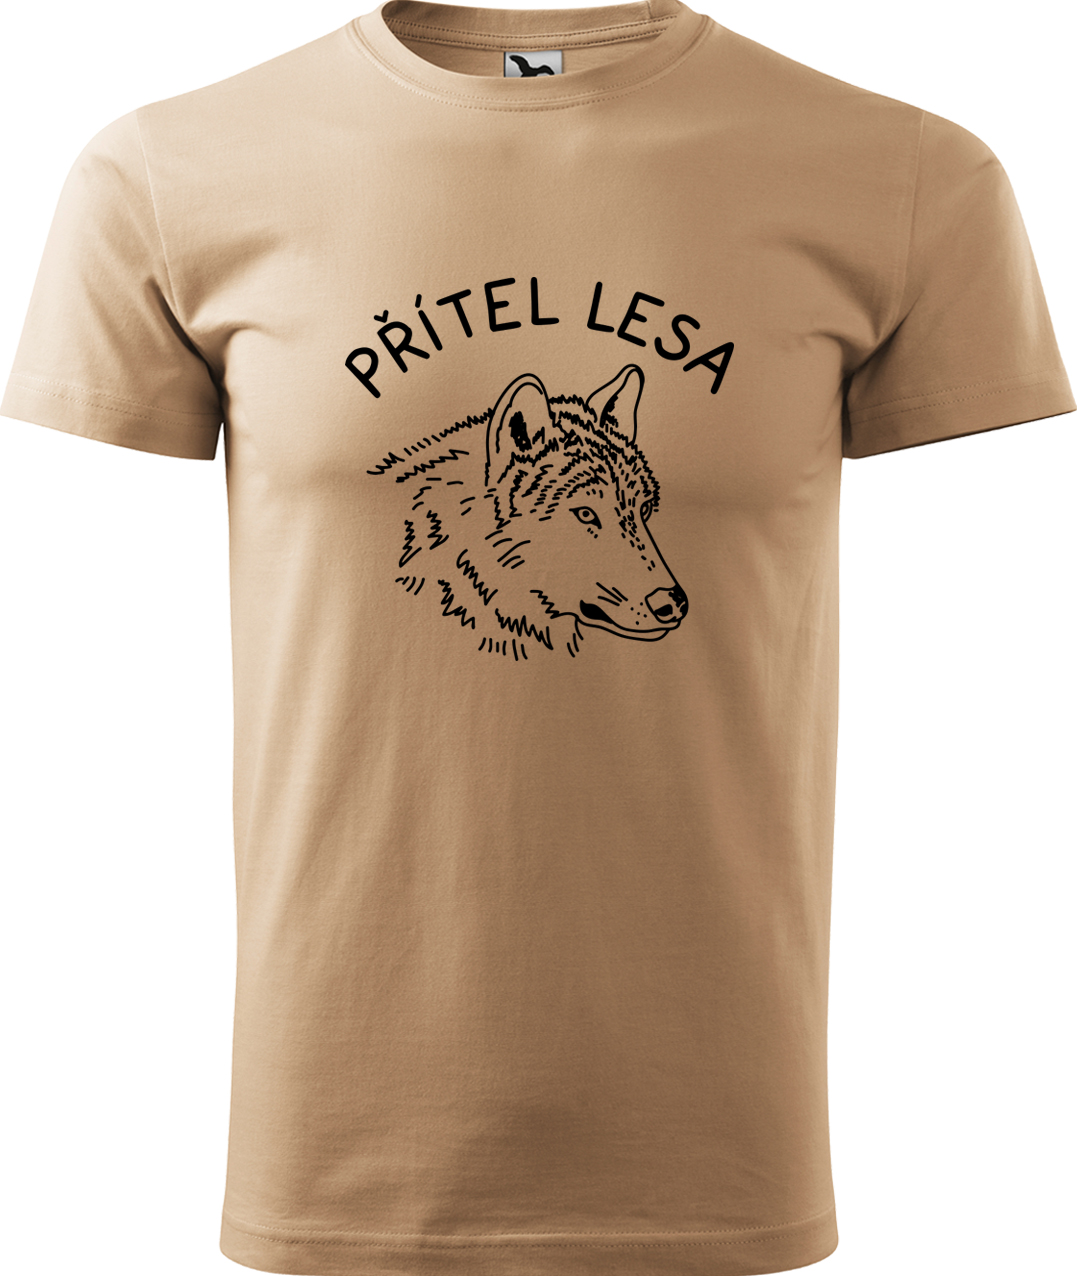 Pánské tričko s vlkem - Přítel lesa Velikost: M, Barva: Písková (08), Střih: pánský